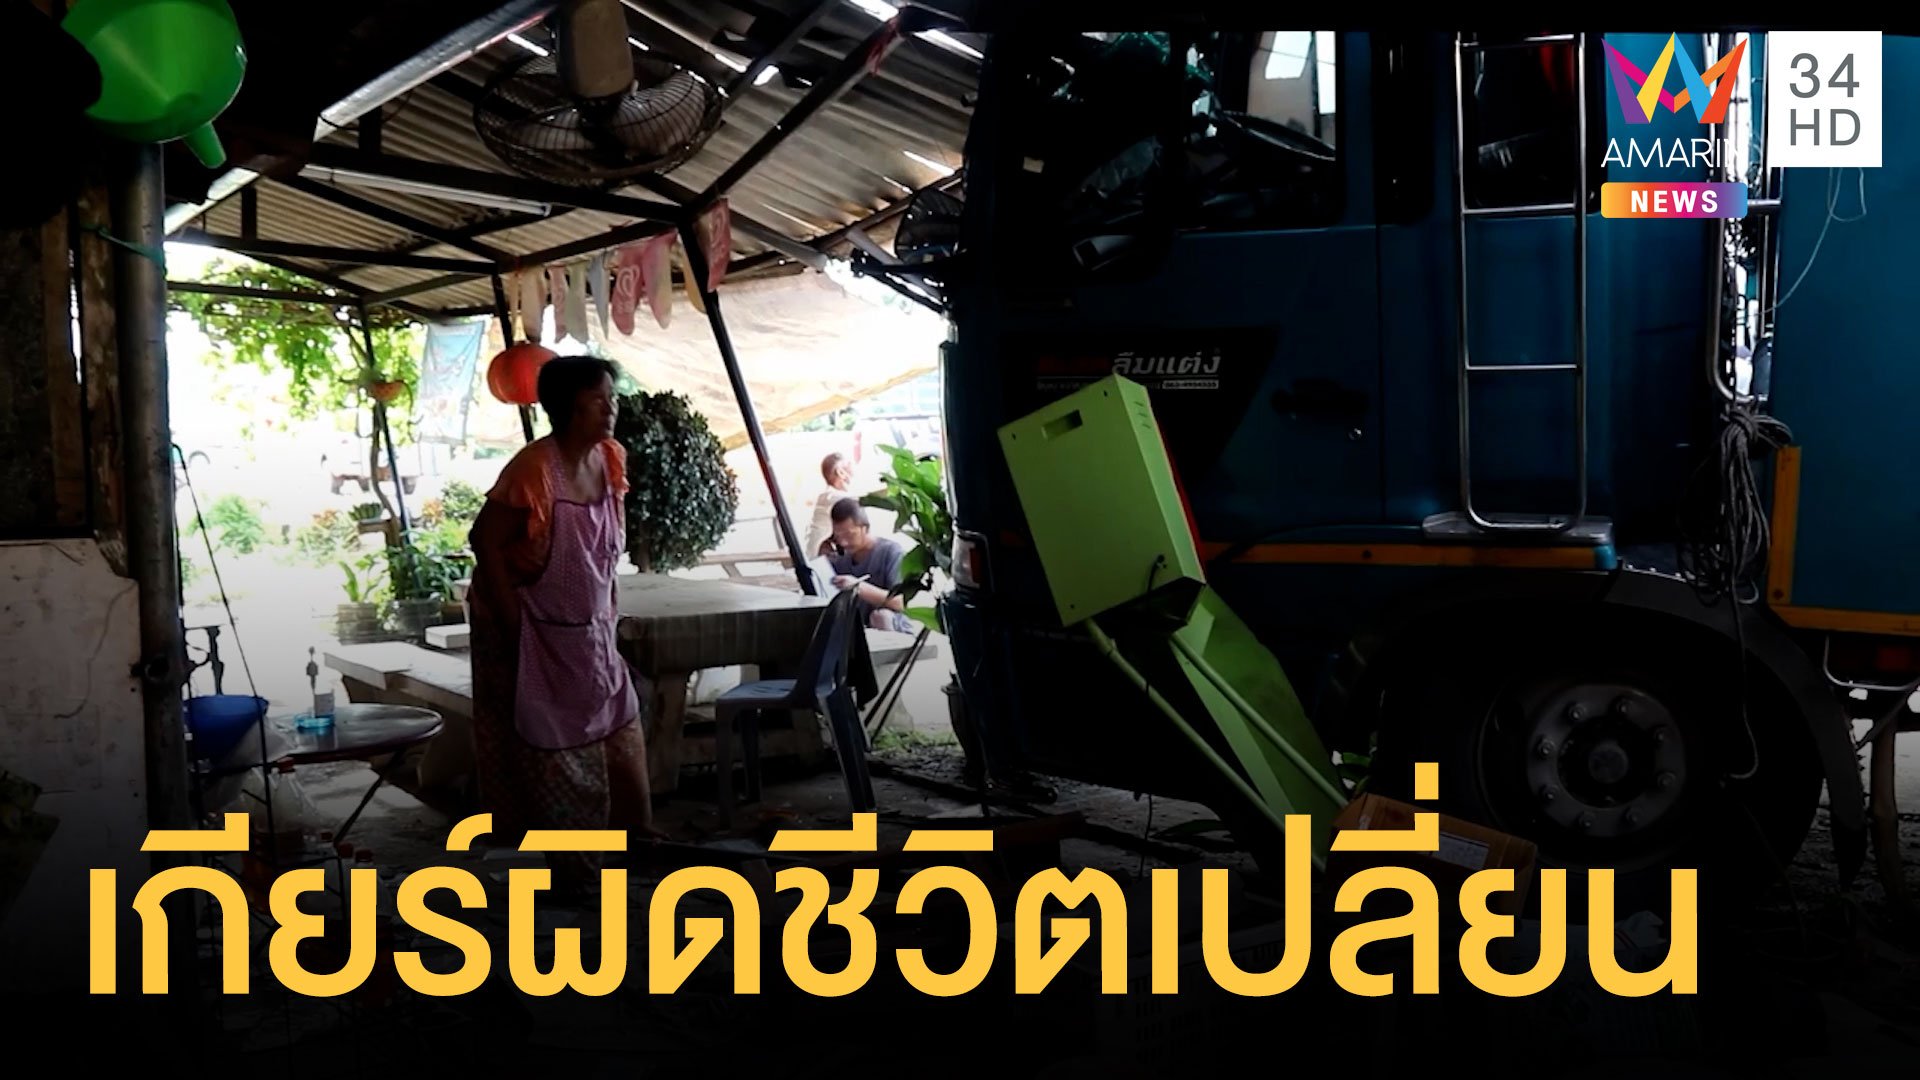 รถบรรทุกผลไม้เข้าเกียร์ผิดพุ่งชนร้านค้าพังยับ | ข่าวอรุณอมรินทร์ | 27 มิ.ย. 64 | AMARIN TVHD34